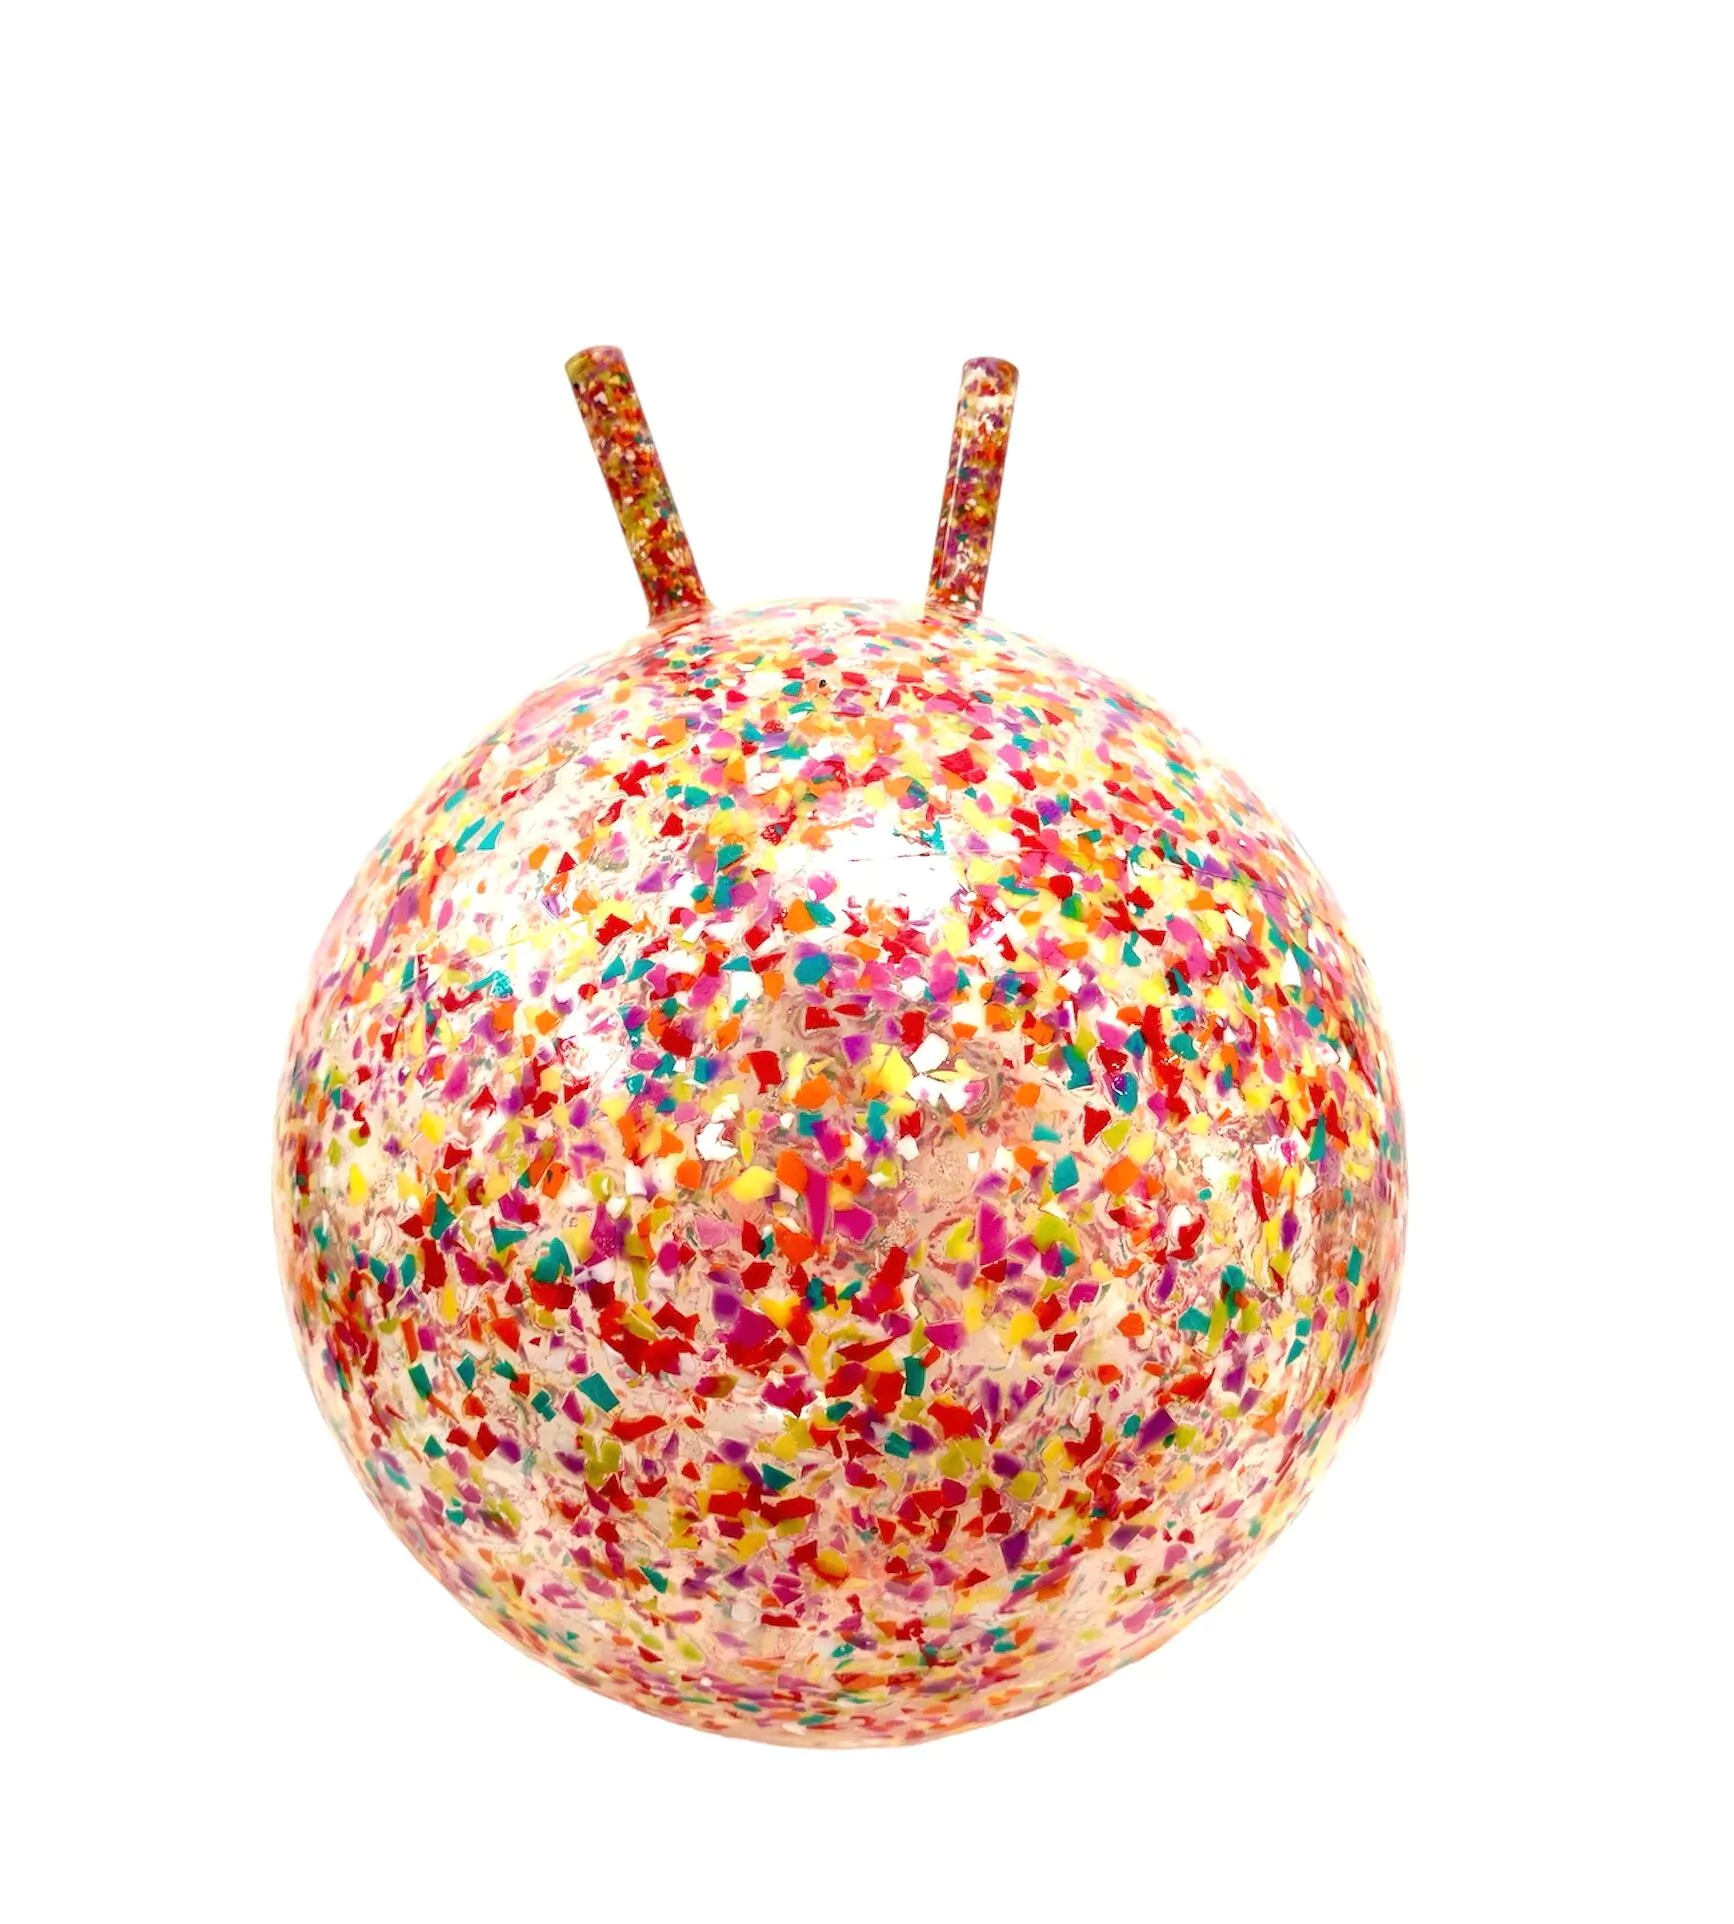 Ratatam - Ballon sauteur confetti